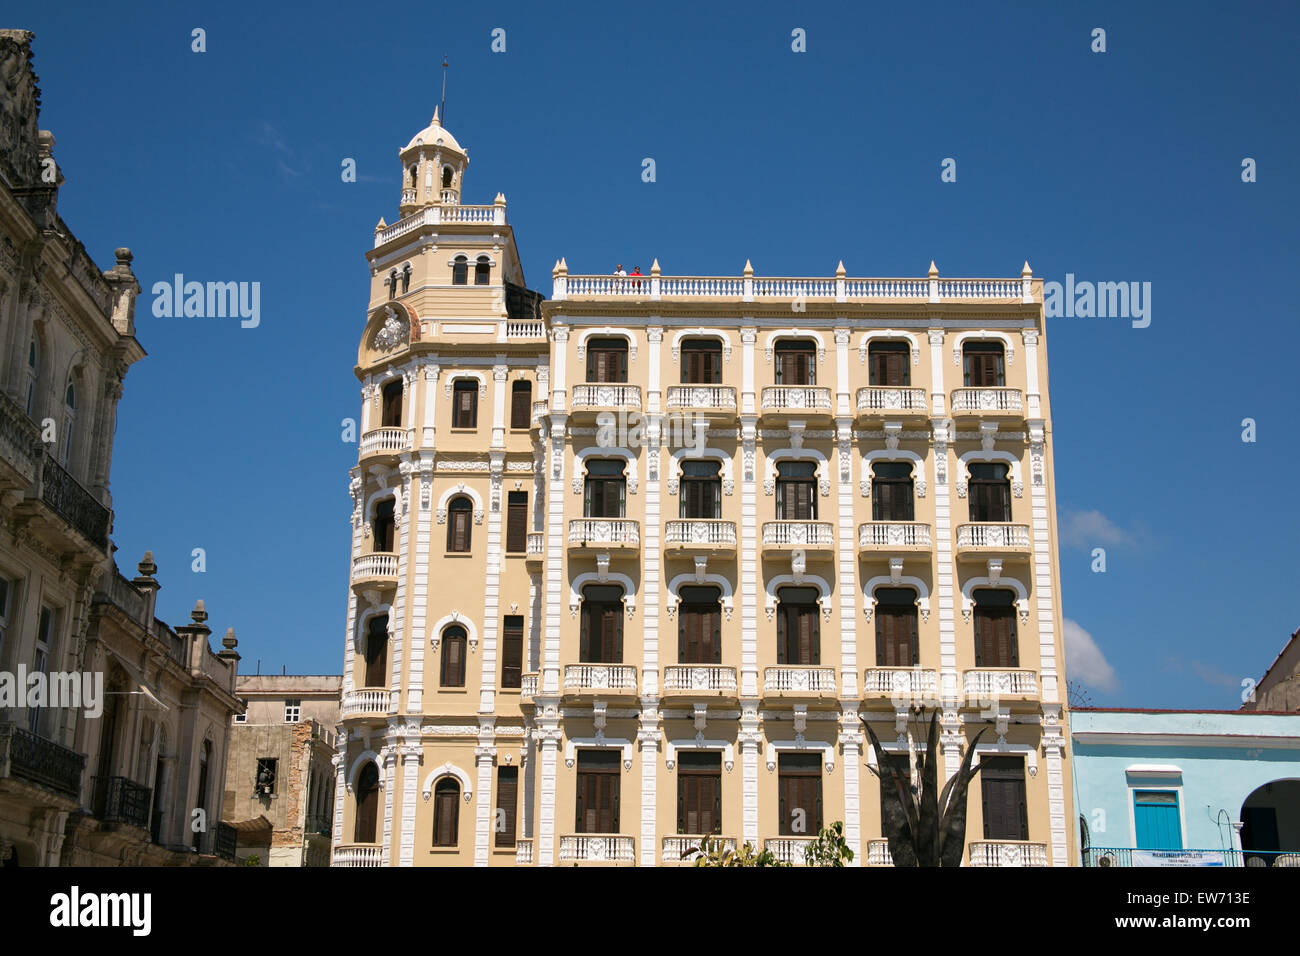 Gomez Vila edificio in Plaza Vieja nella Vecchia Havana, Cuba che ospita la camera obscura. Foto Stock